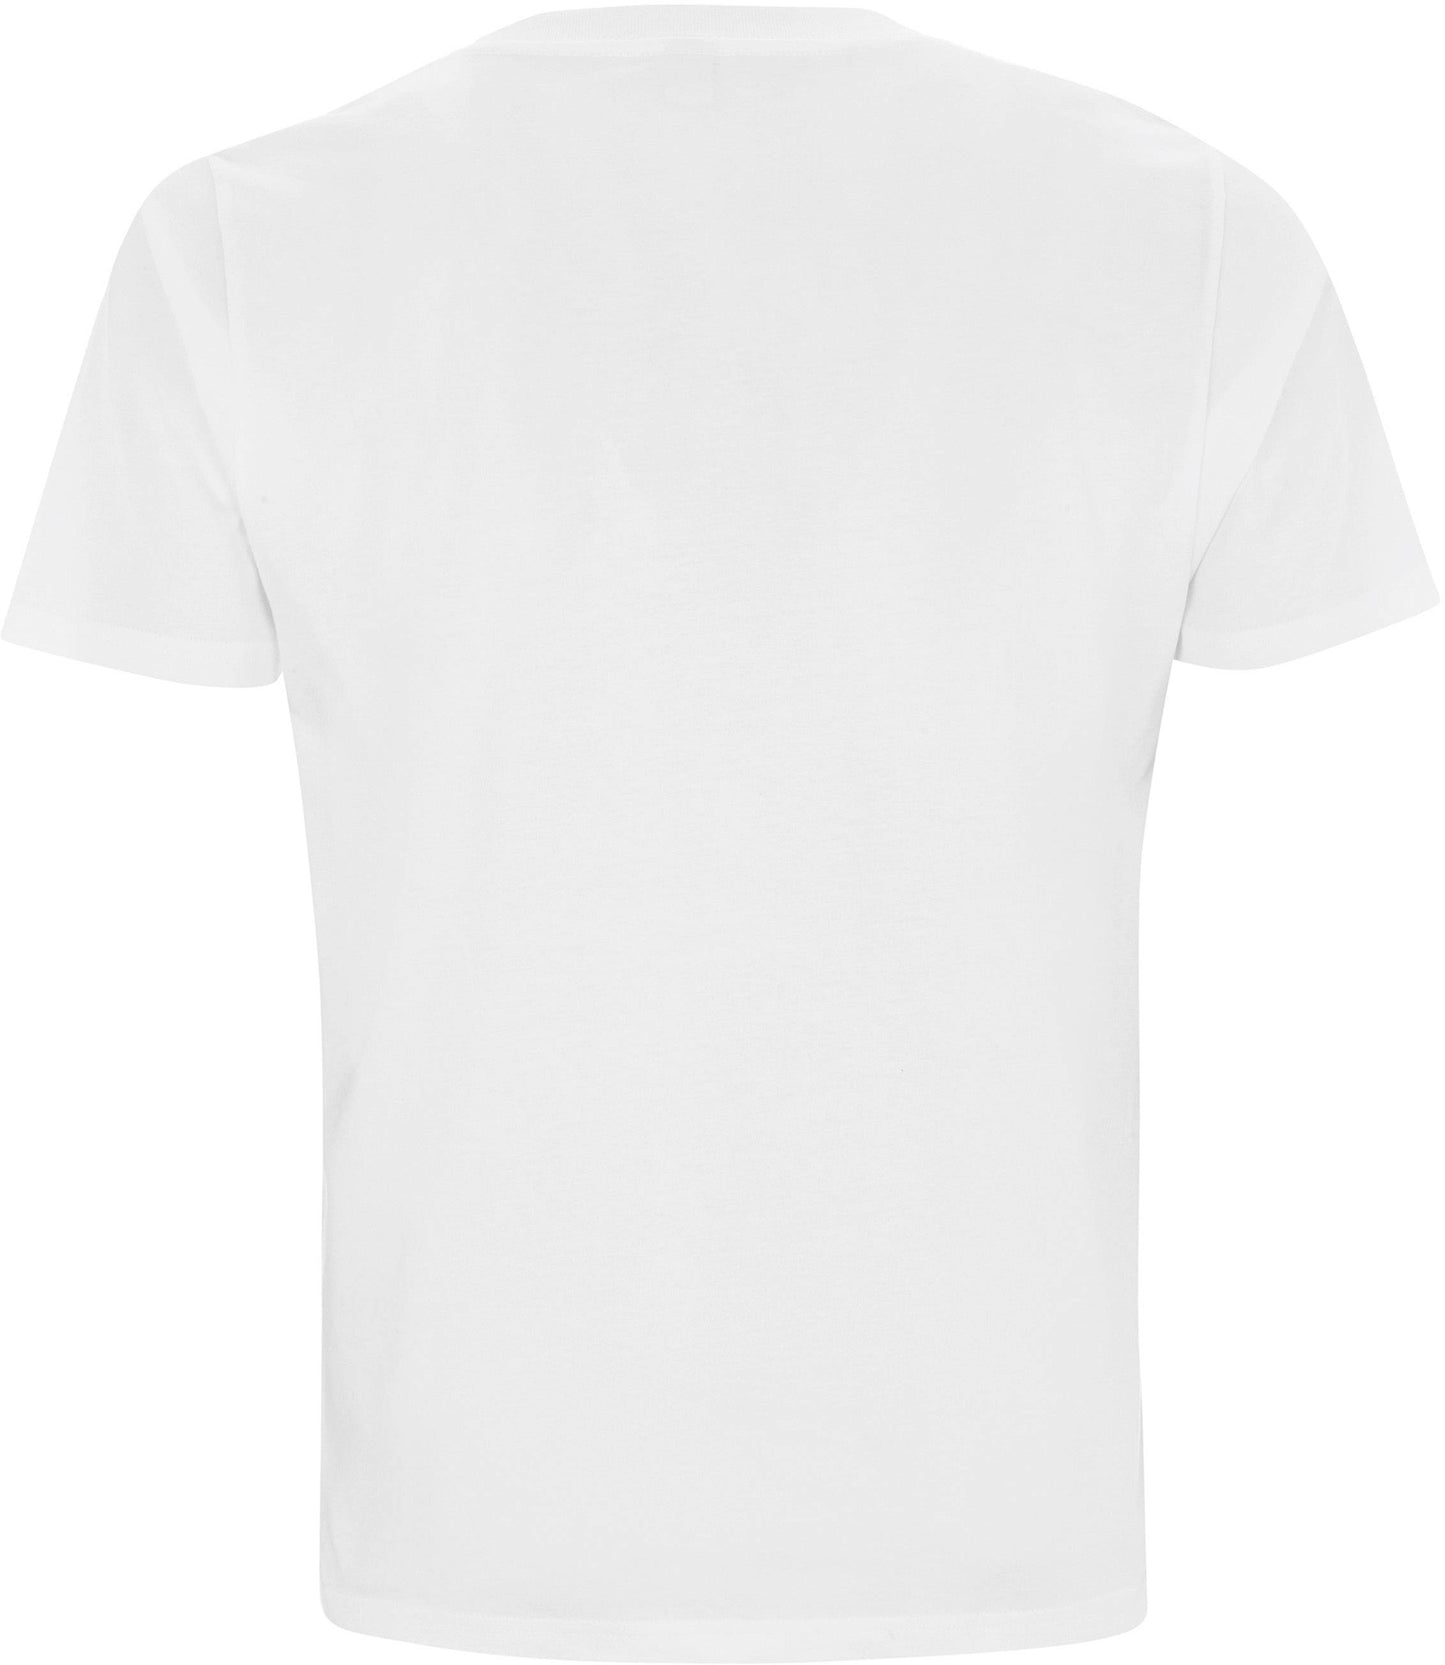 Athleez Basic Shirt - Classic